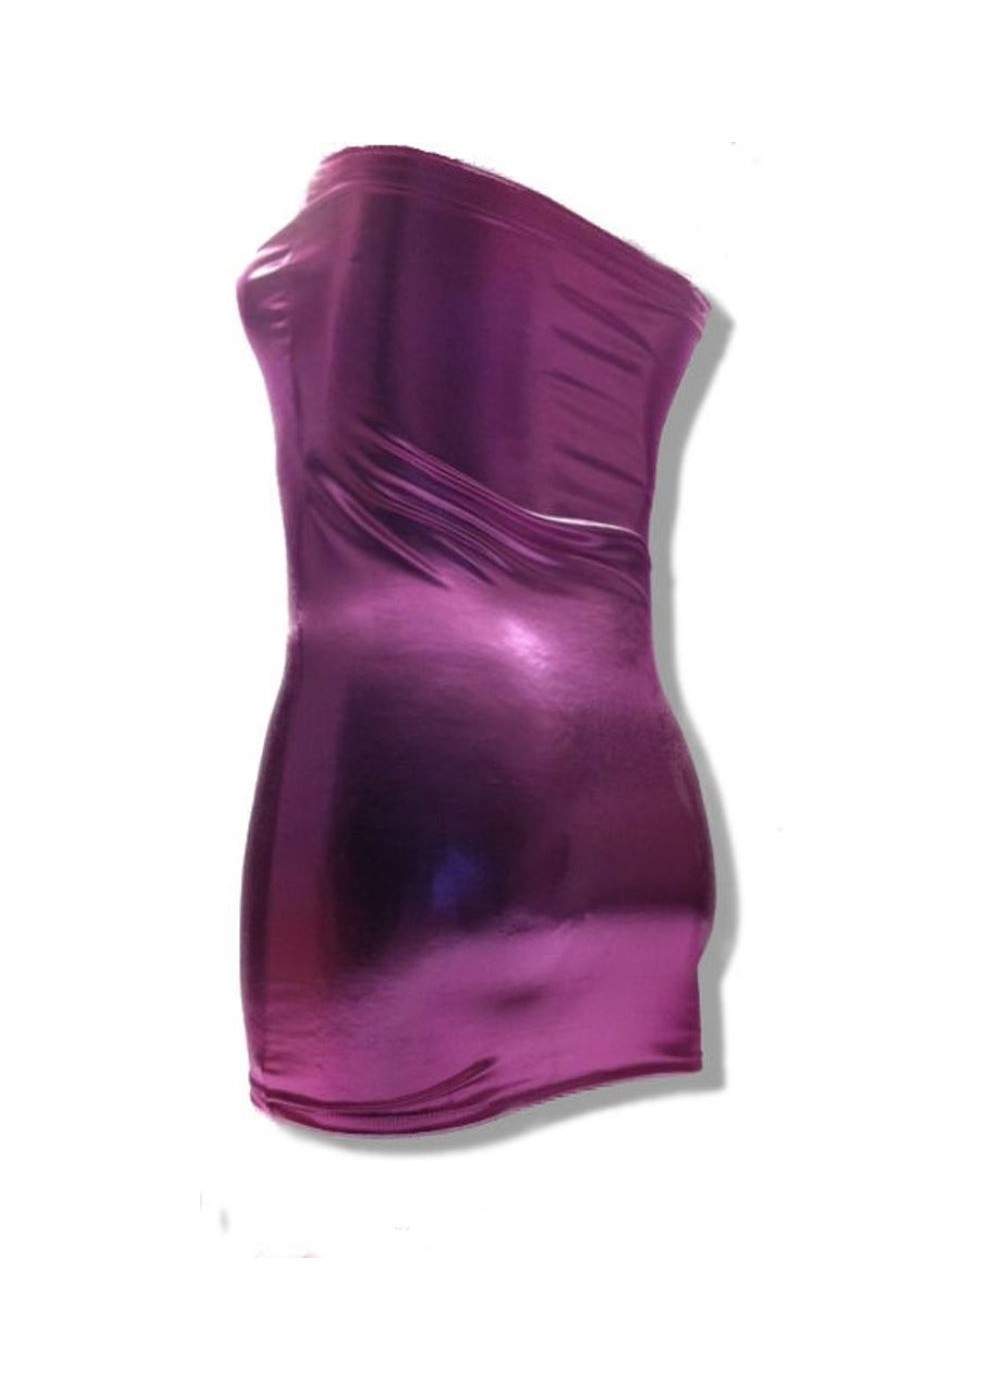 Rosa Bandeau Kleid Größen 44 - 52 viele Längen bis 75 cm ab 25,00 € - 